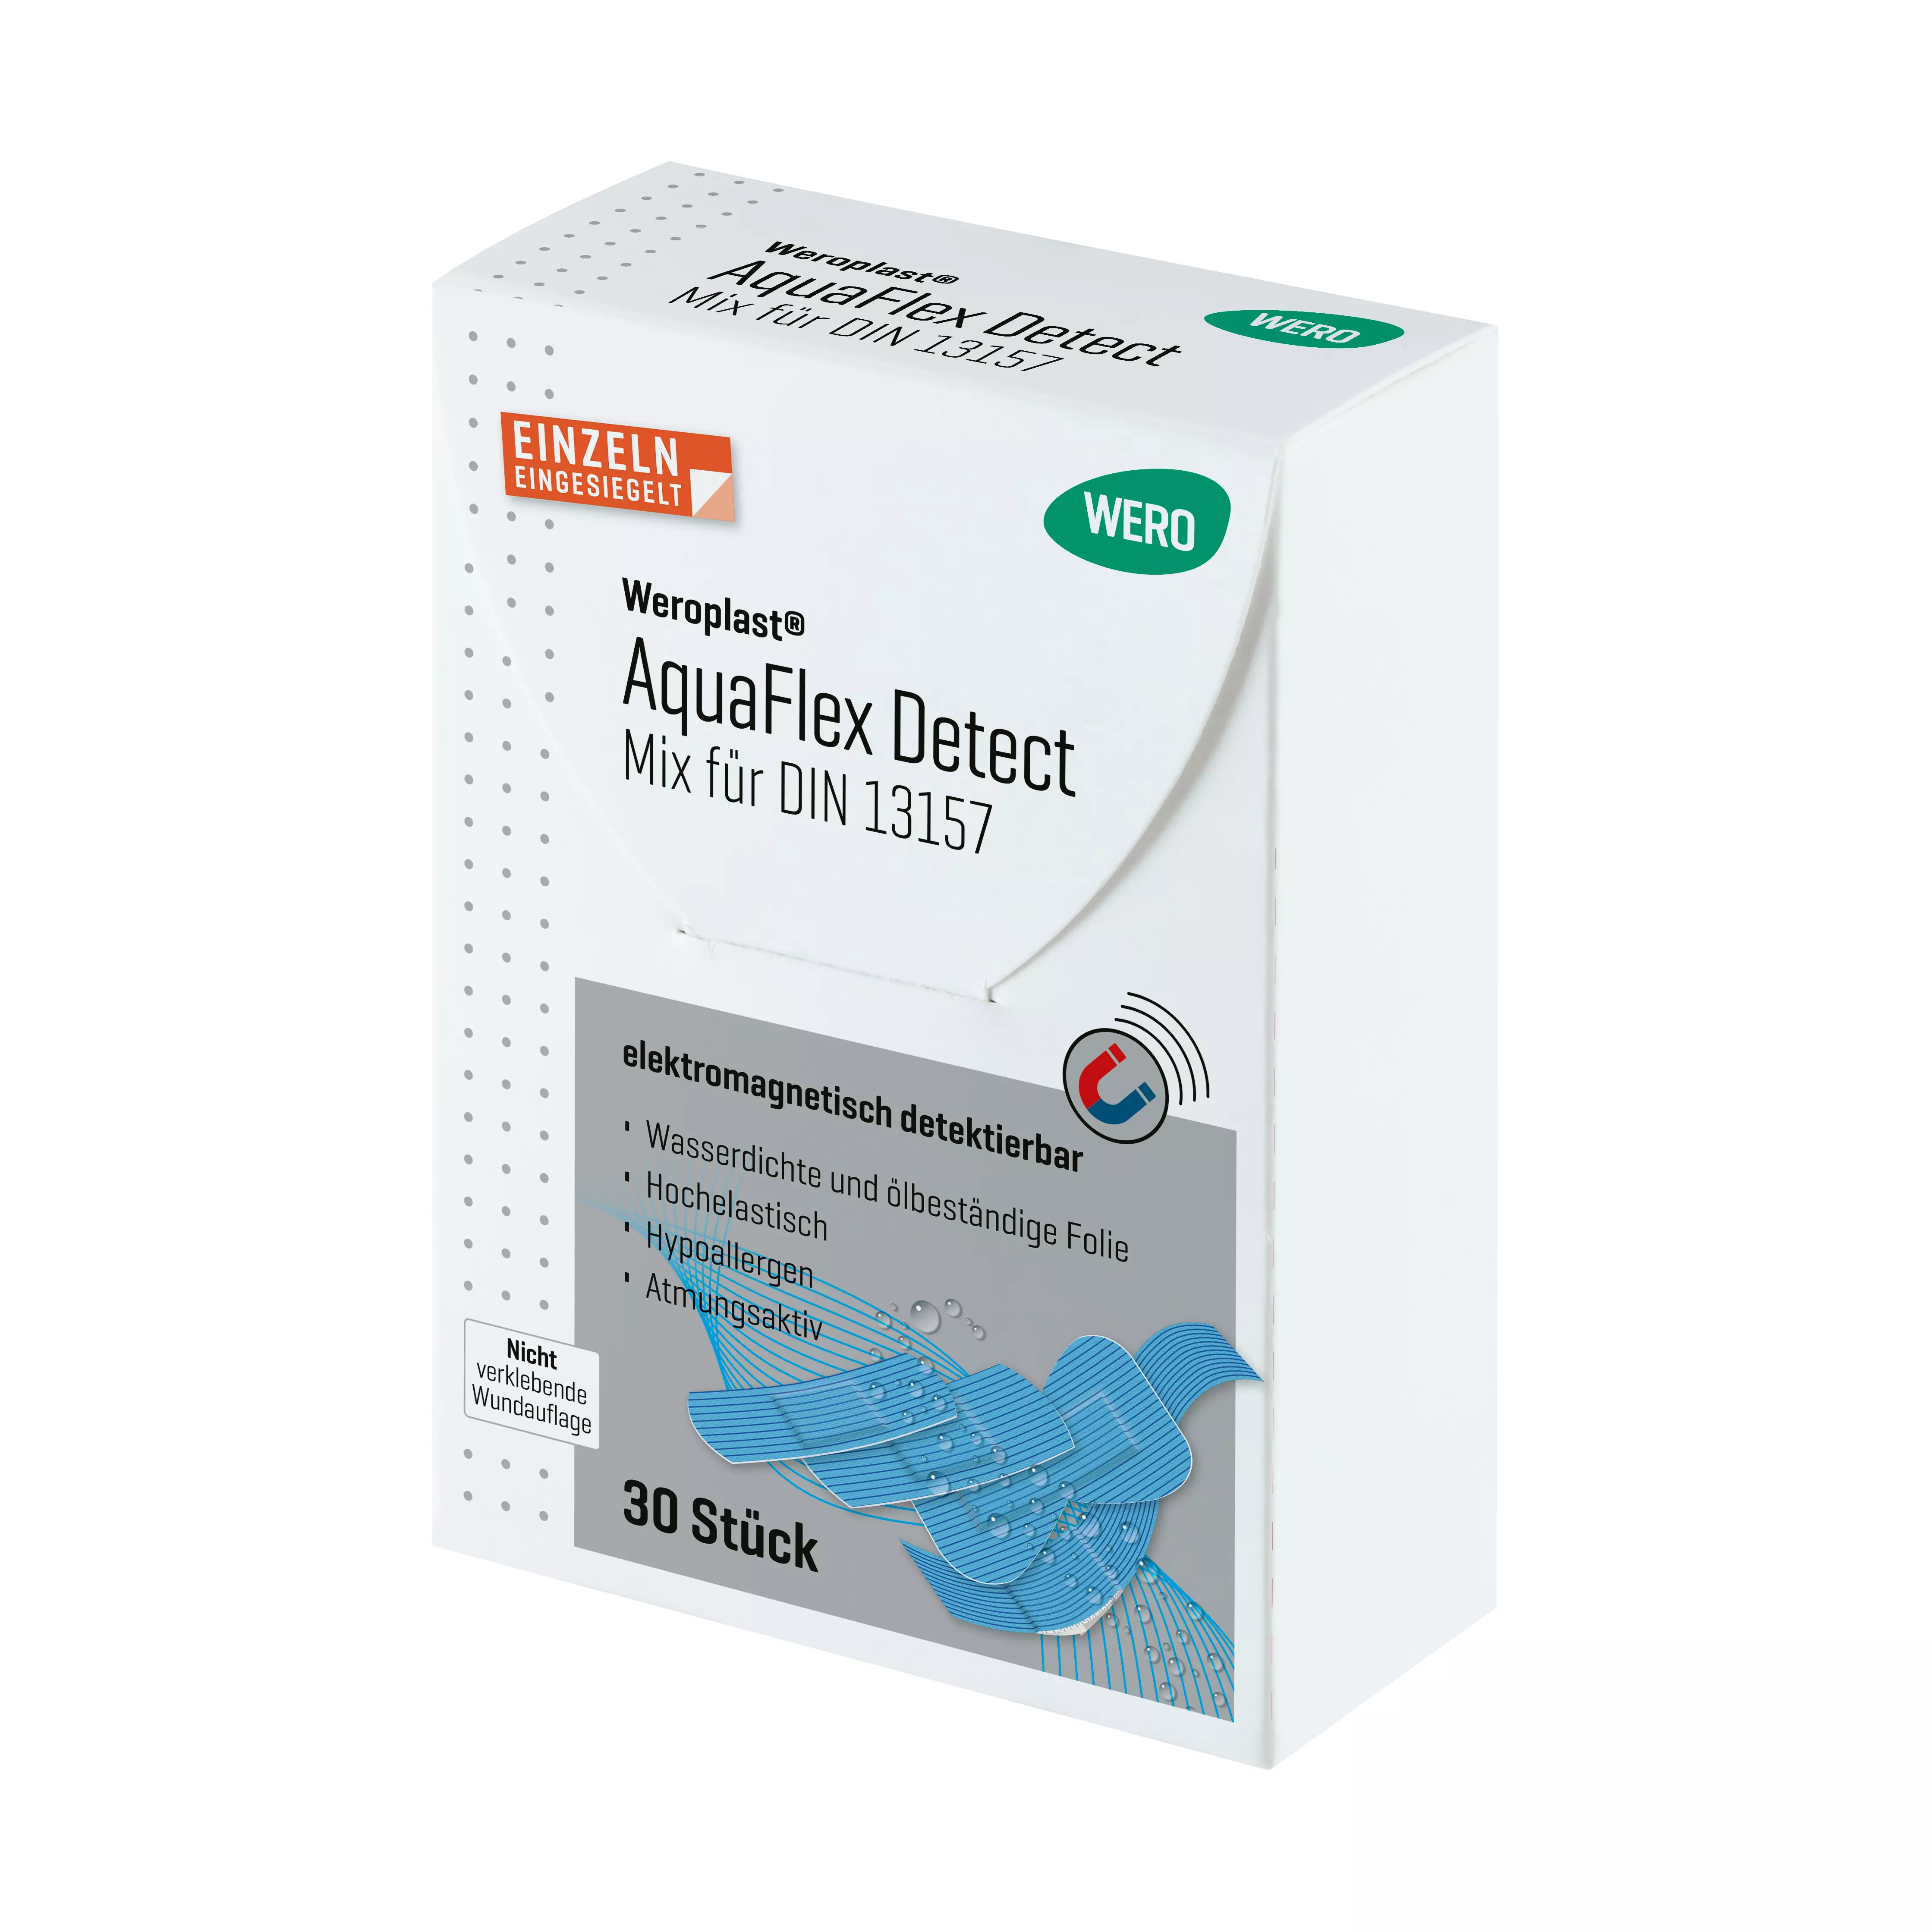 Weroplast® AquaFlex Detect plasters - Mix DIN 13157